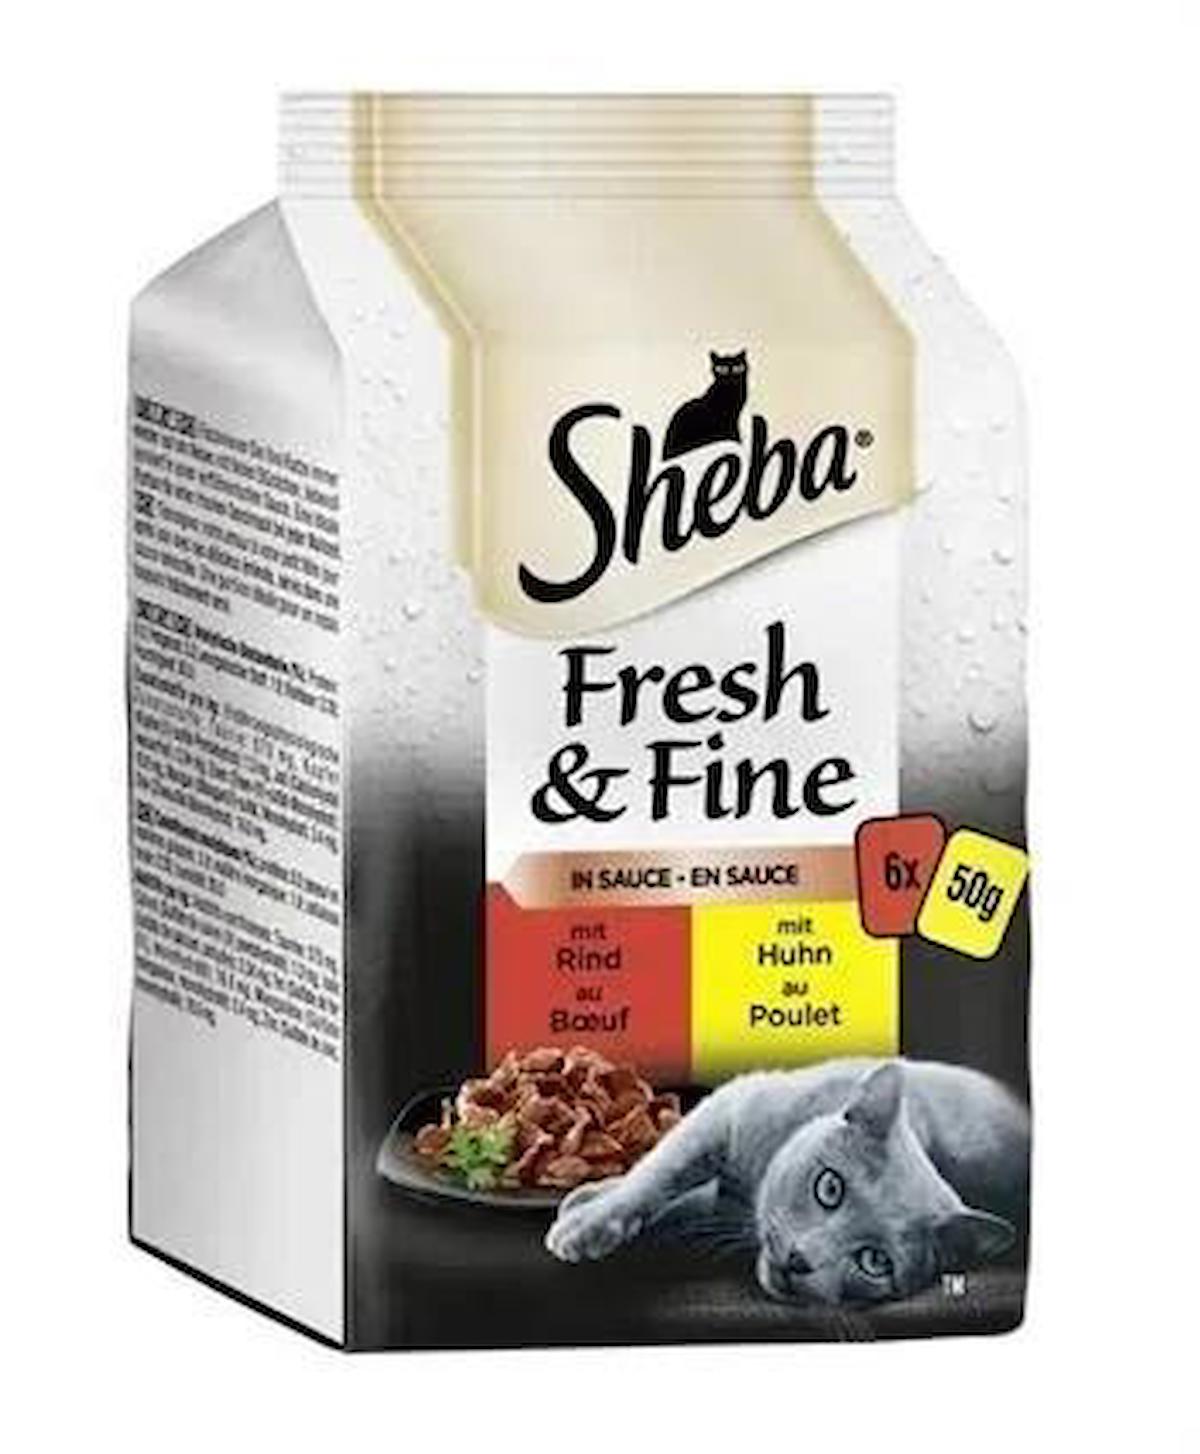 Sheba Fresh & Fine Etli Yetişkin Yaş Kedi Maması 6x50 gr